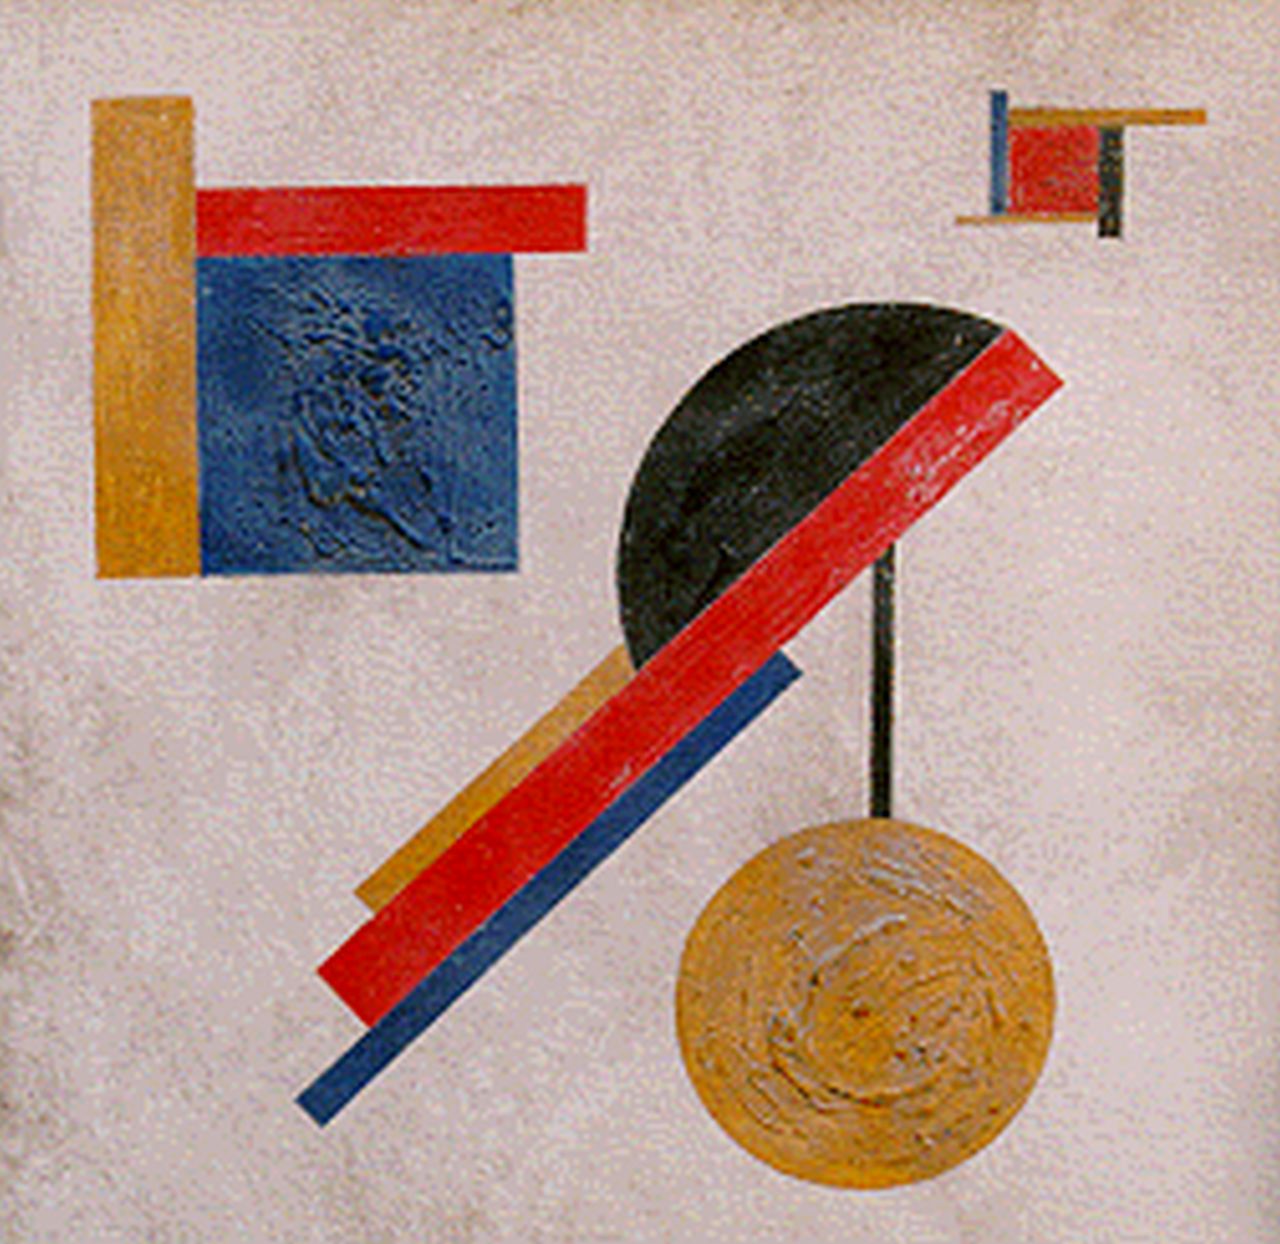 Kroha L.  | Ladislau Kroha, Suprematische compositie, olieverf op paneel 25,0 x 25,0 cm, gesigneerd niet